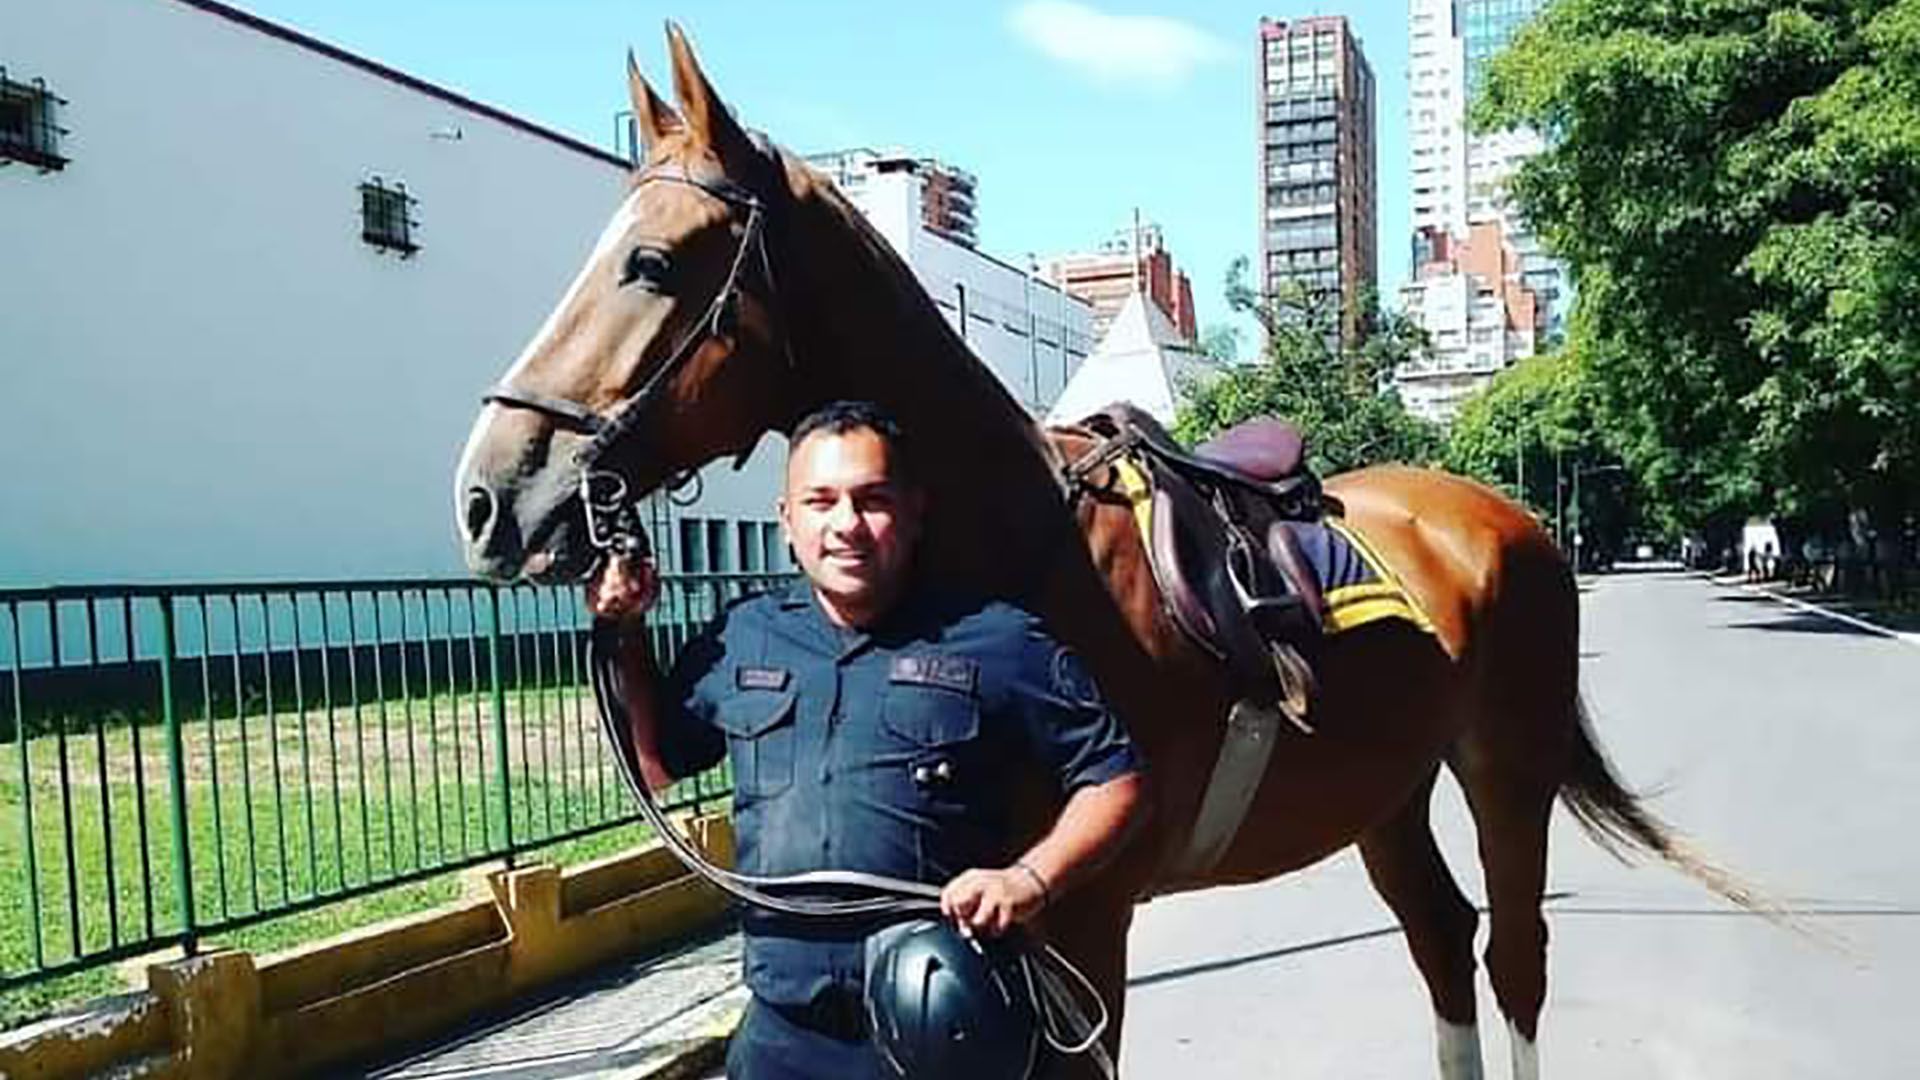 JUAN PABLO ROLDAN POLICIA ASESINADO